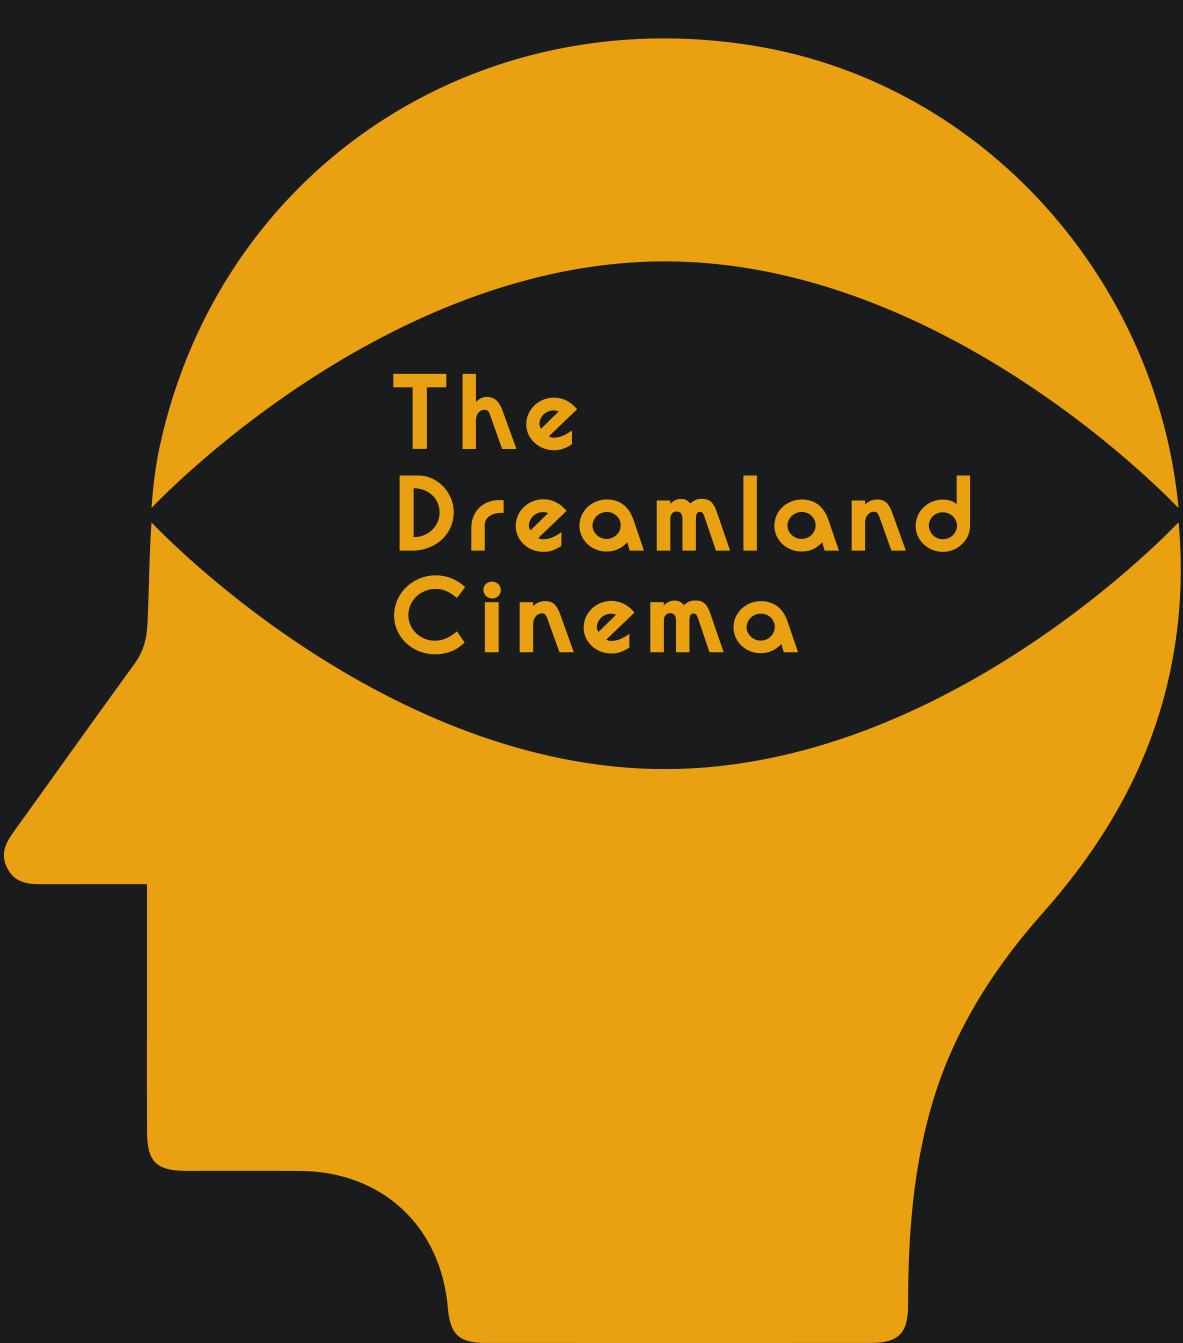 The Dreamland Cinema